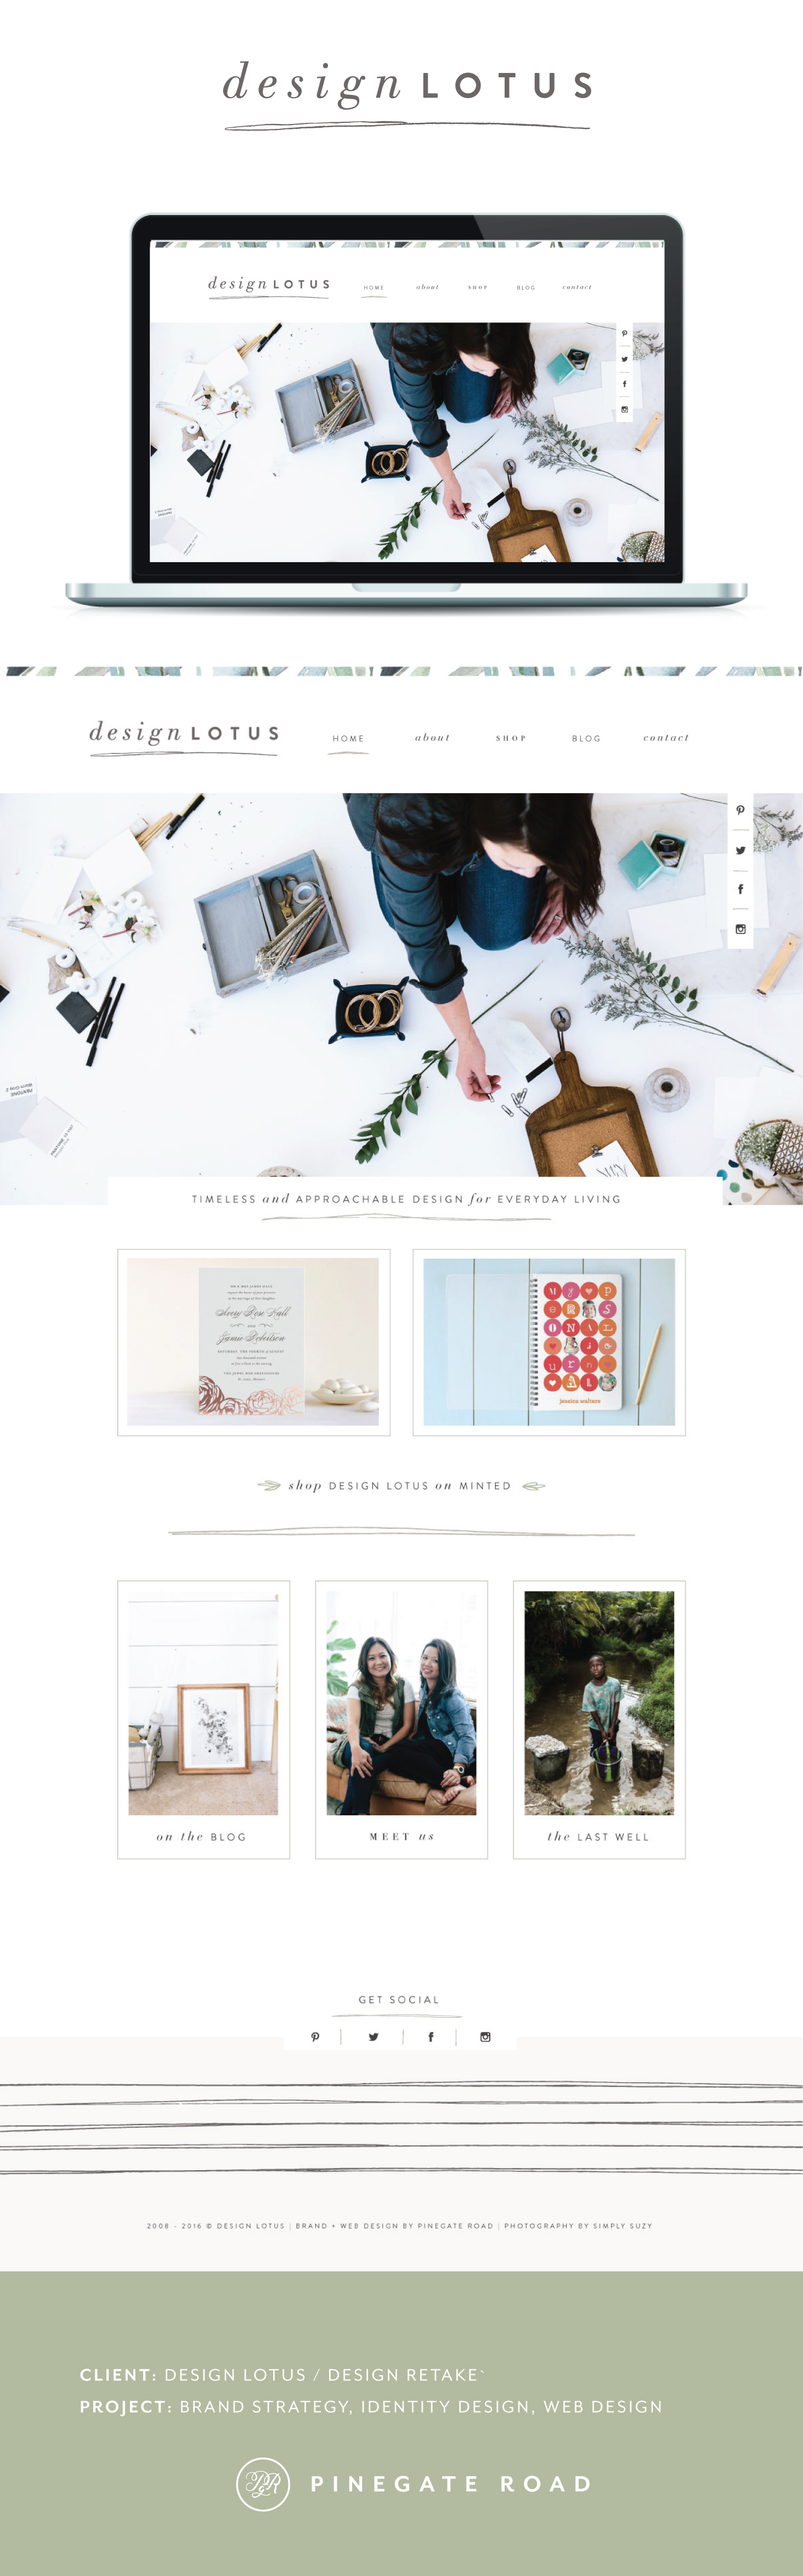 stationery web design for design lotus, minted, diy blog